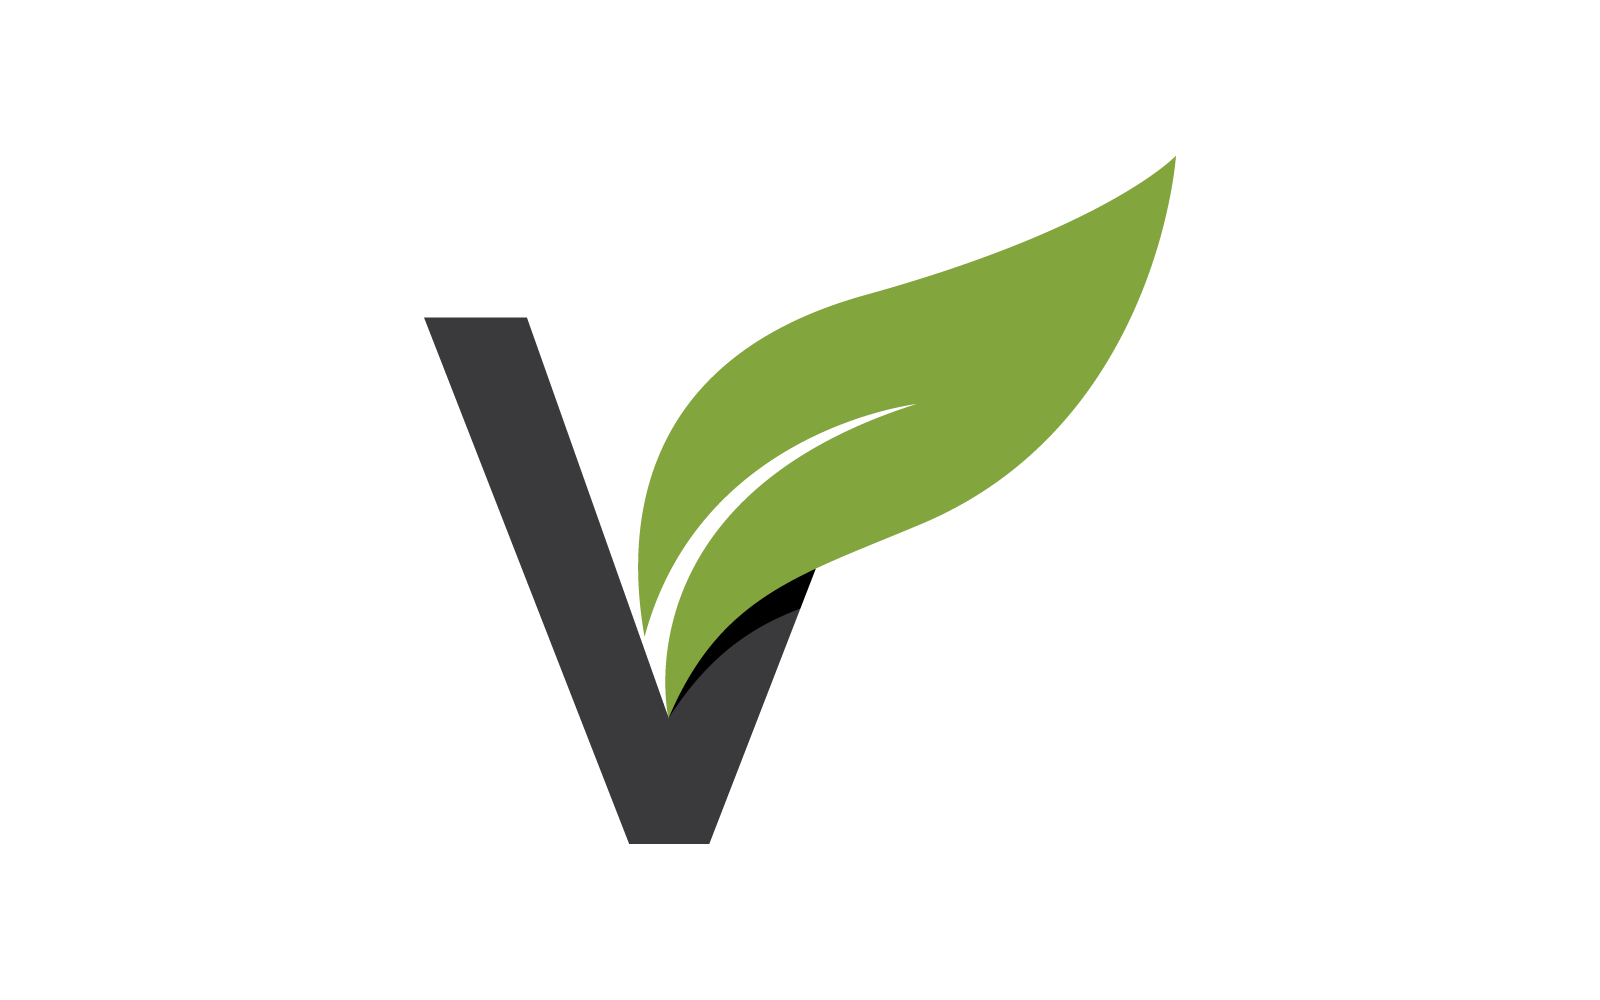 V Lettera iniziale con design piatto vettoriale logo foglia verde